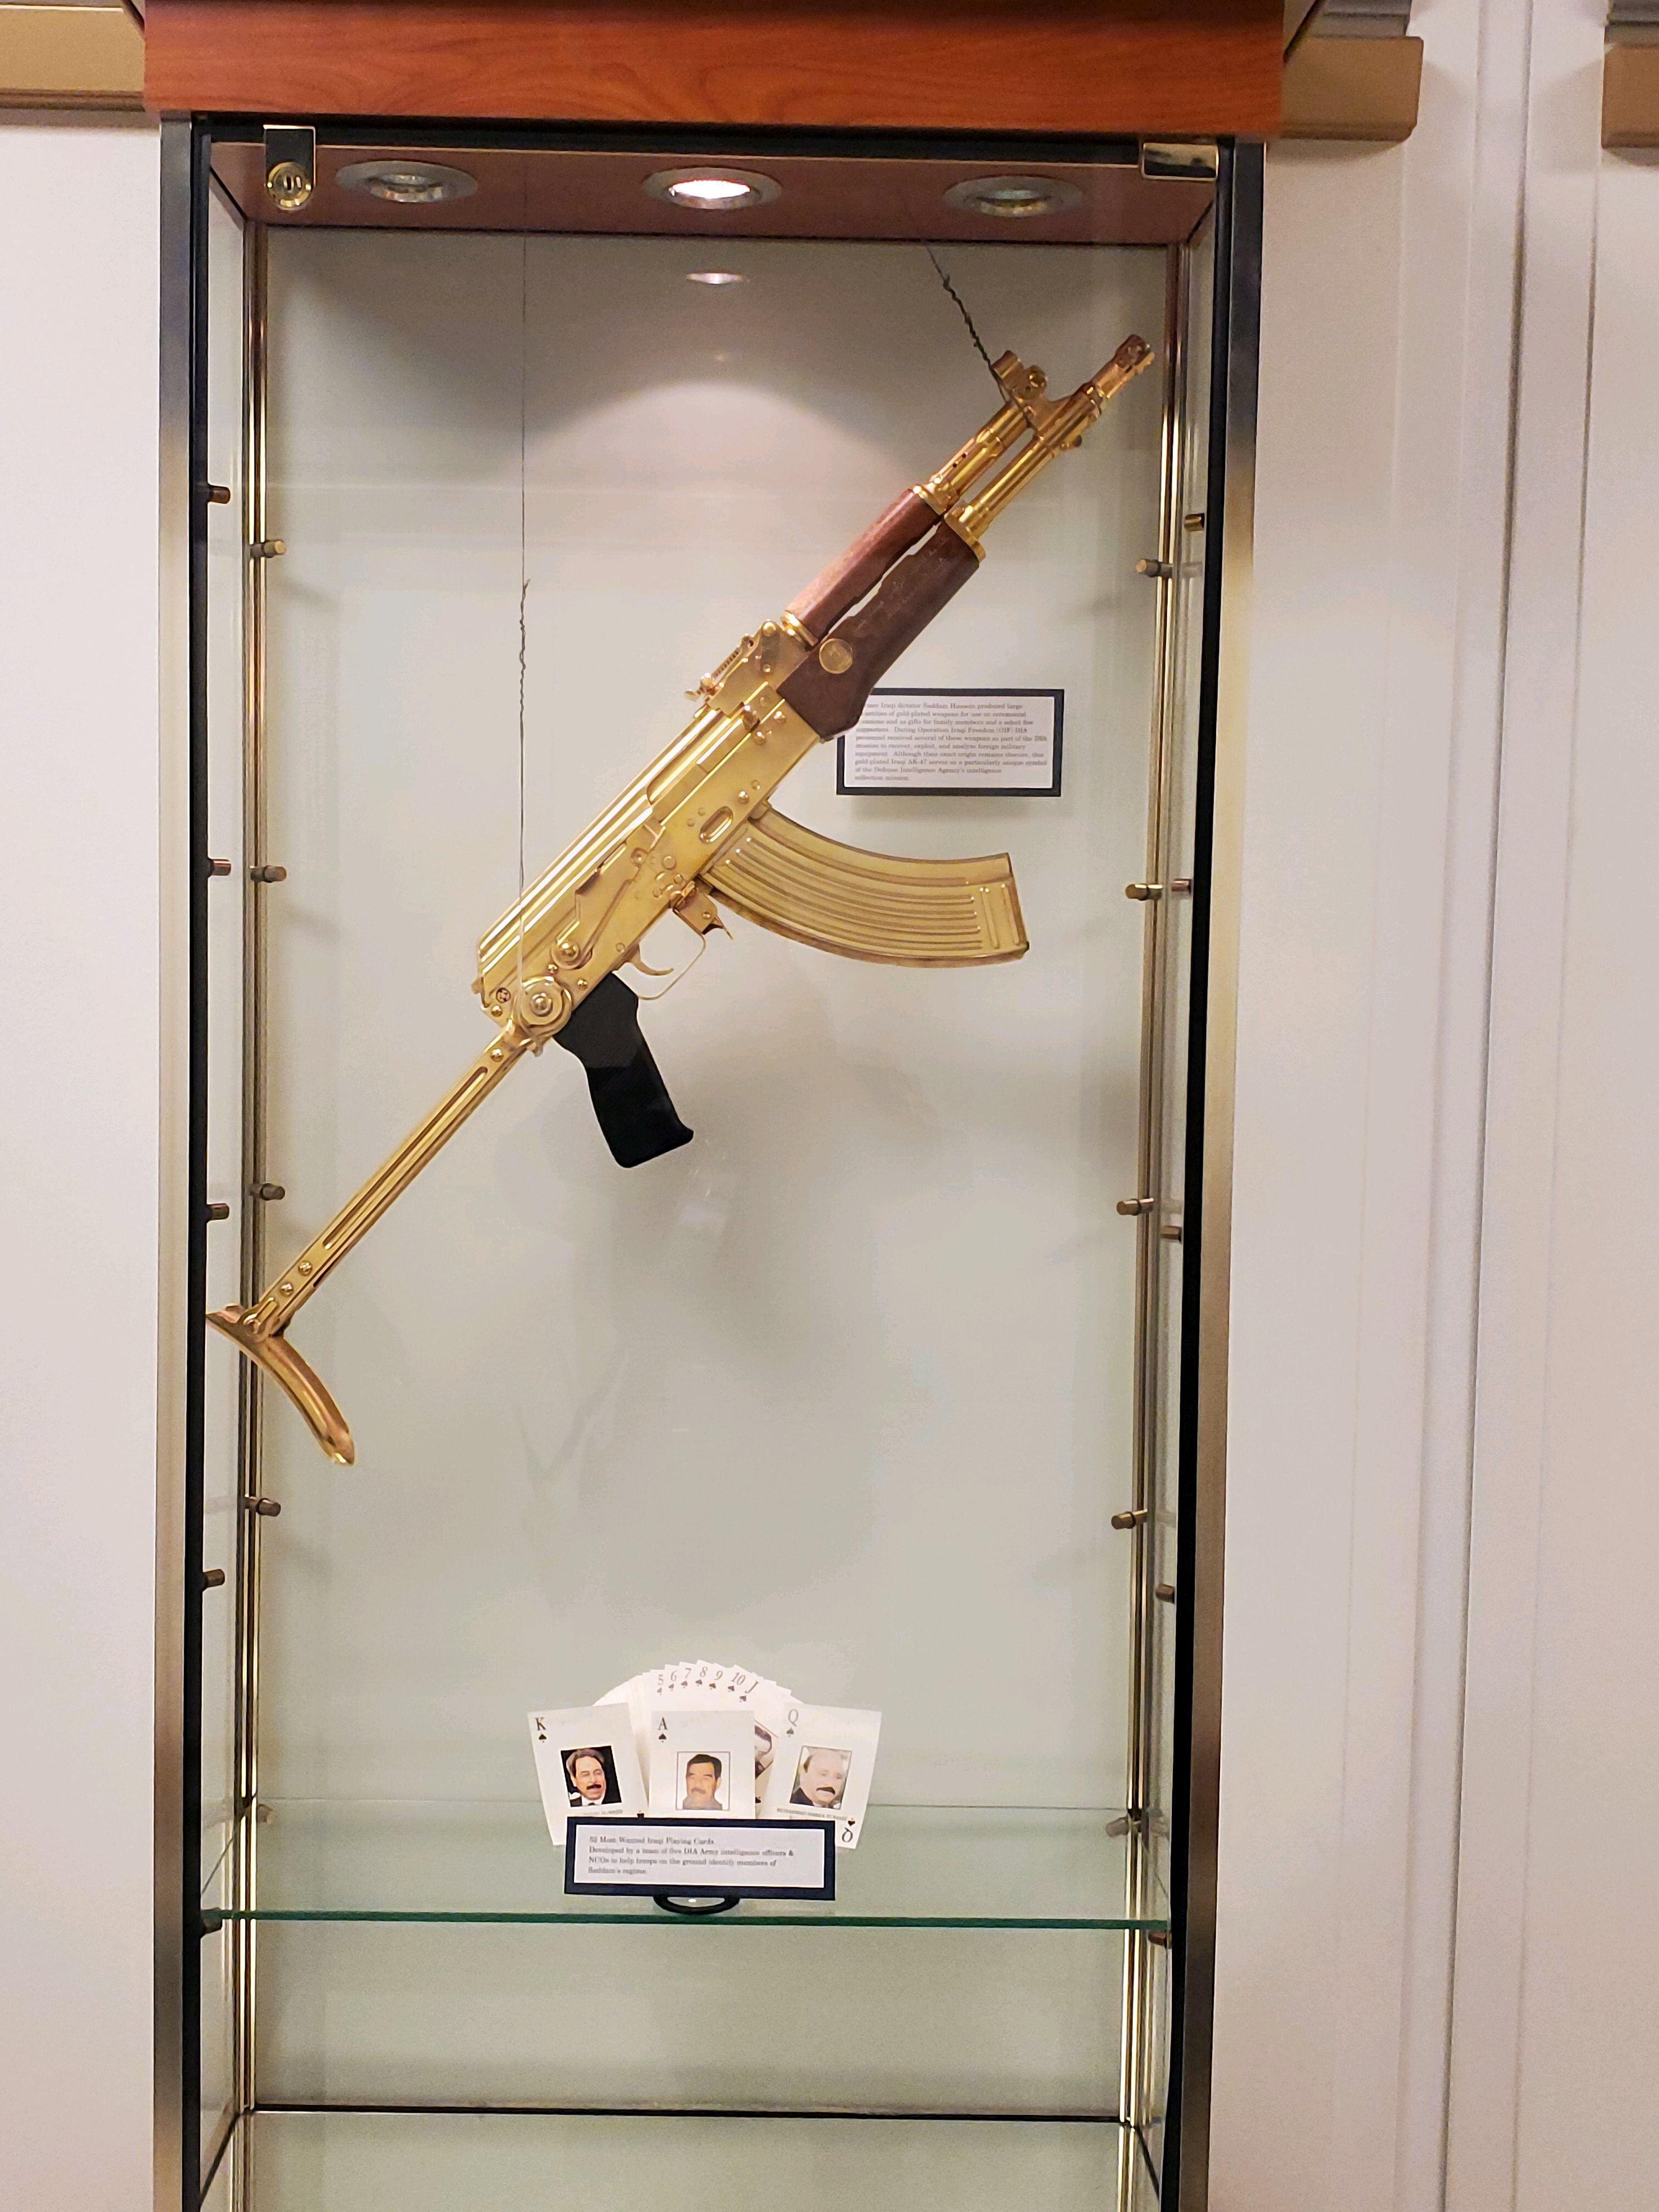 Saddam Hussein's Gold AK 47 on display